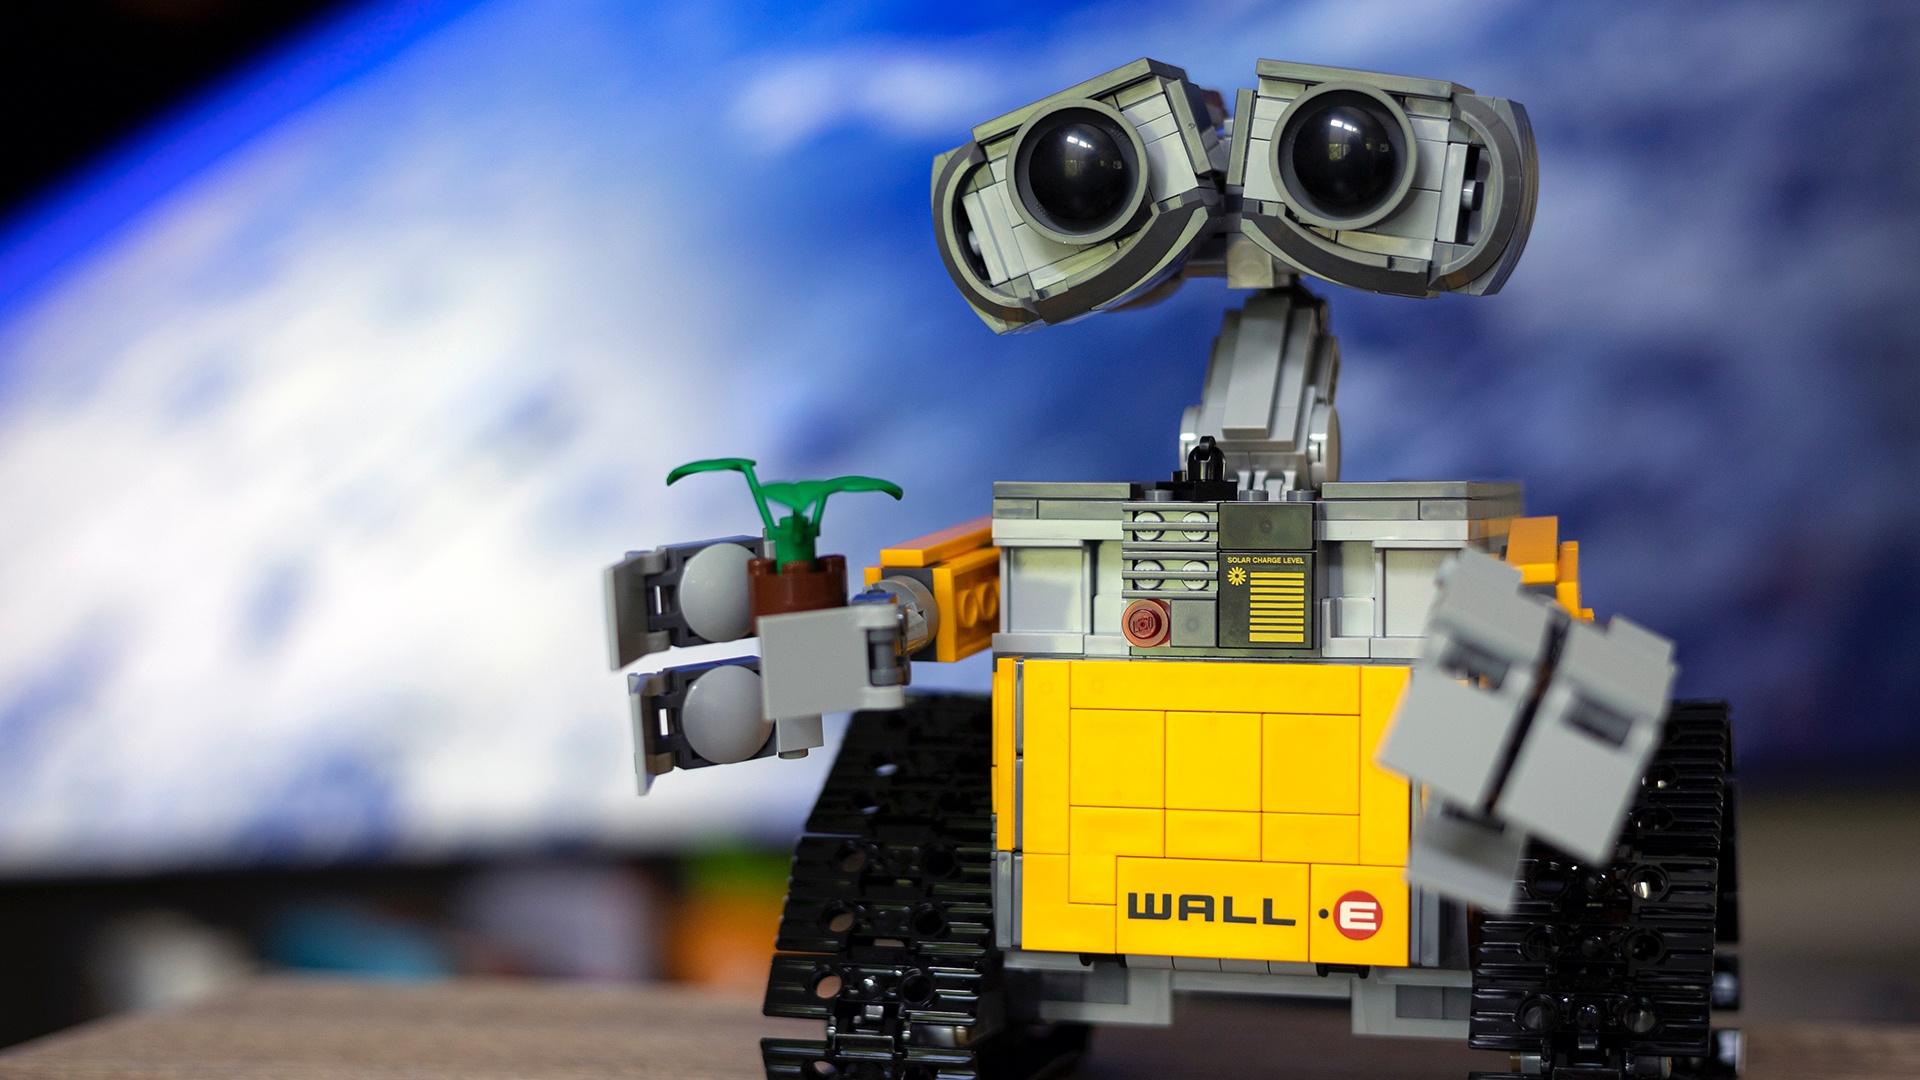 #Wall-E mit Beinen? Disney stellt niedlichen Roboter vor